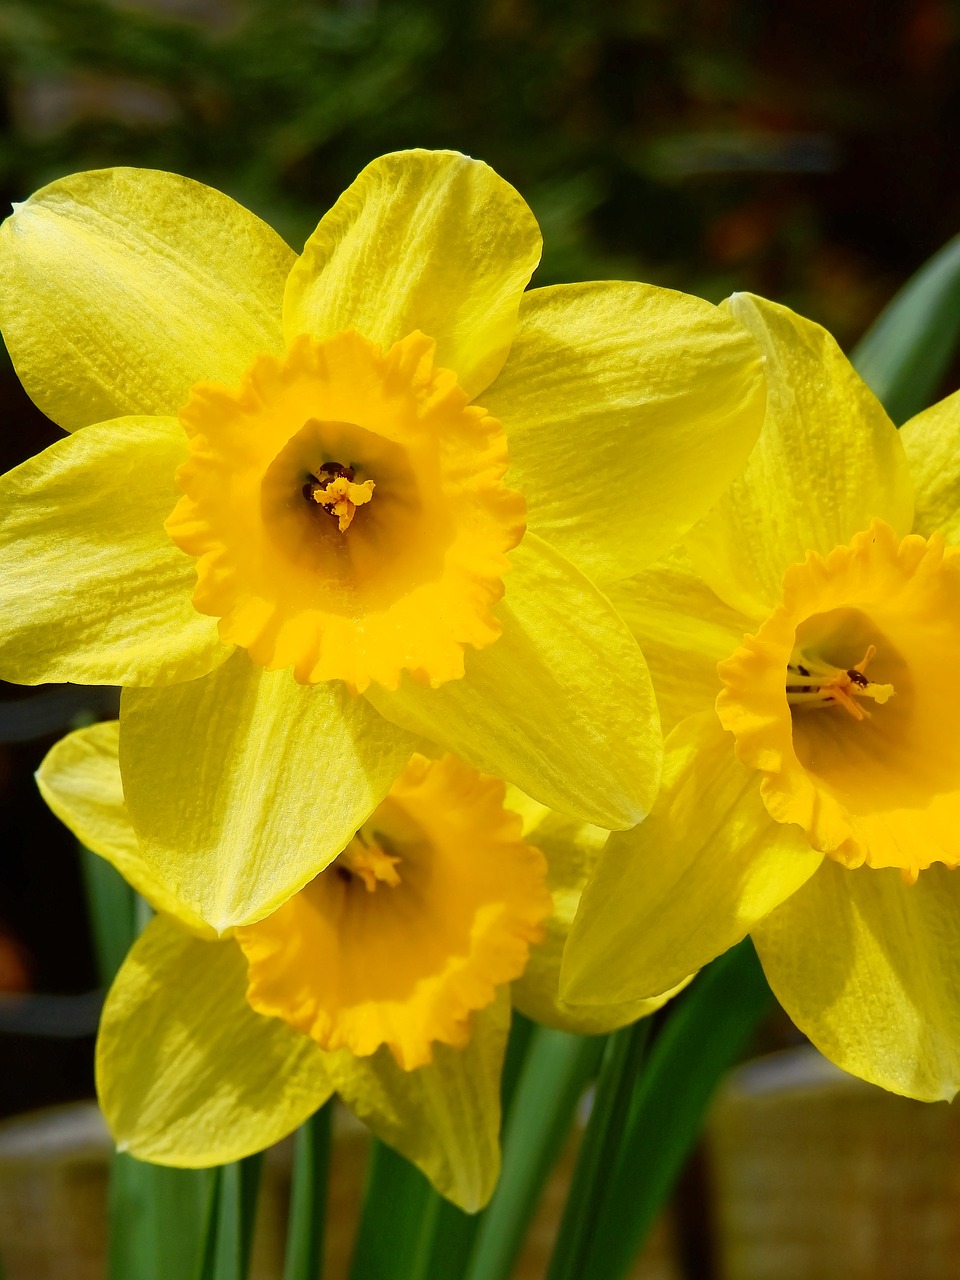 osterglocken daffodils yellow free photo